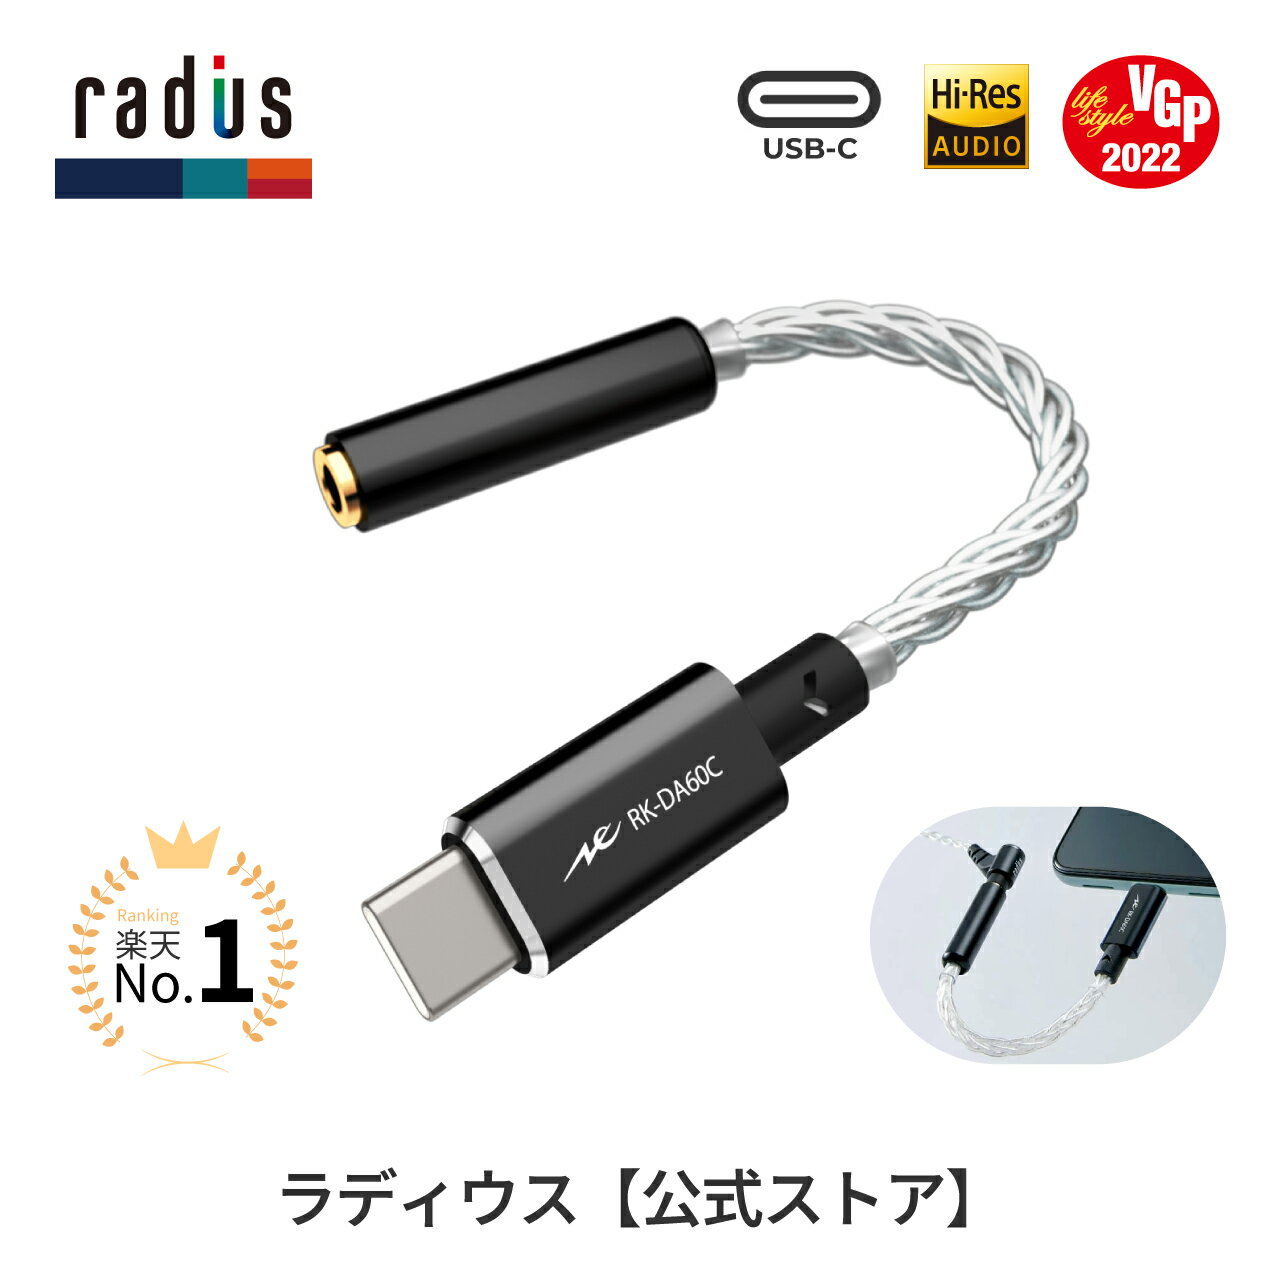 ラディウス RK-DA60CK 超小型 ポータブルヘッドホンアンプ DAC ハイレゾ対応 USB-C接続 radius Ne ポータブルアンプ DACアンプ ハイレゾ 32bit/384kHz Android アンドロイド コンバーター USB Type-C Type-A接続可 プレゼント ギフト